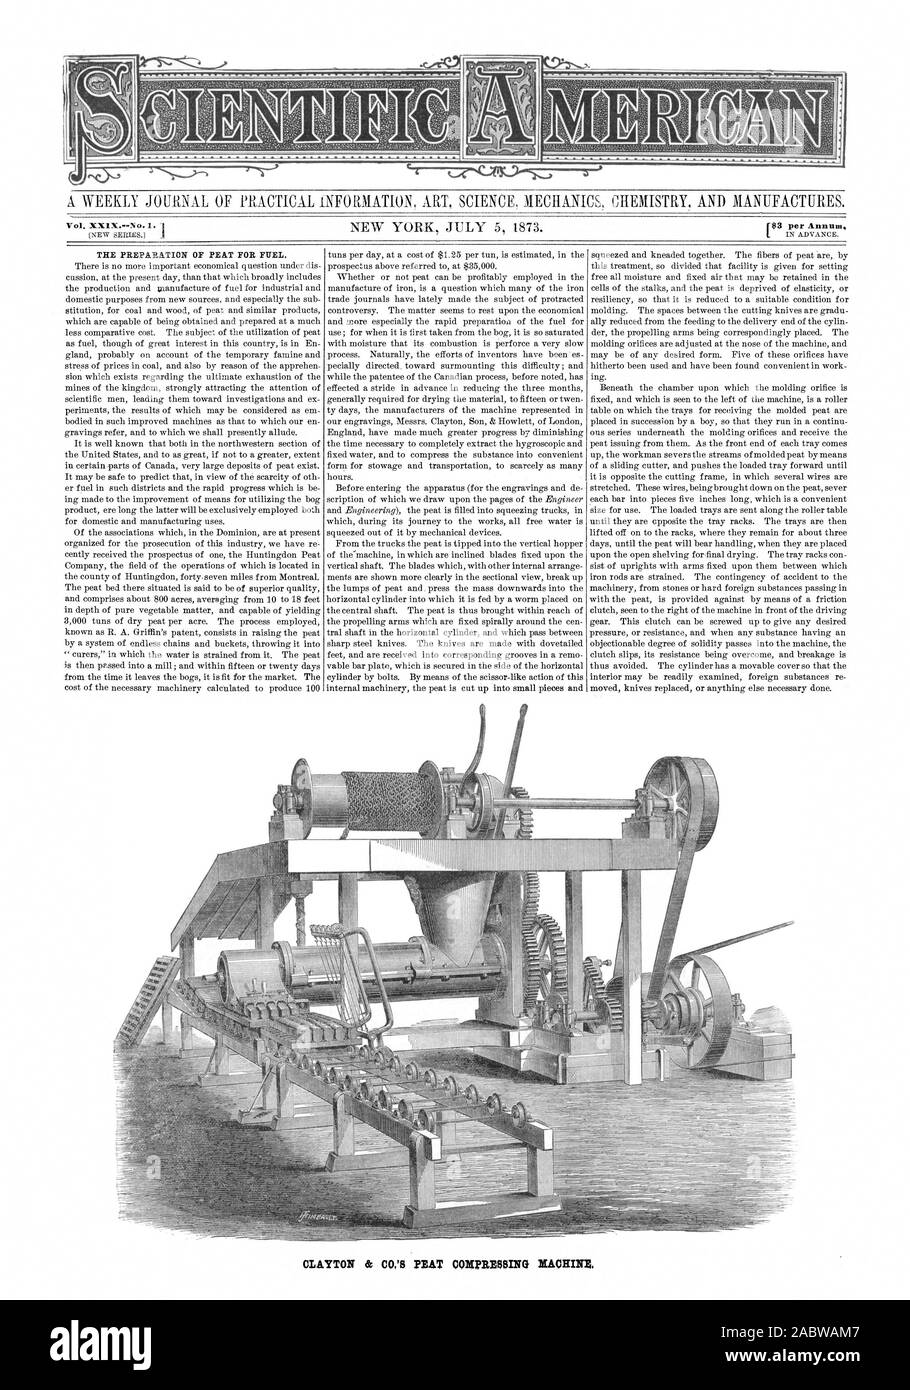 Eine wöchentliche Zeitschrift für PRAKTISCHE INFORMATIONEN KUNST WISSENSCHAFT MECHANIK CHEMIE UND PRODUZIERT. Vol. XX1X - Nr. 1. 1433 pro Jahr DIE VORBEREITUNG VON TORF ALS BRENNSTOFF. CLAYTON & CO.TORF KOMPRIMIEREN, Scientific American, 1873-07-05 Stockfoto